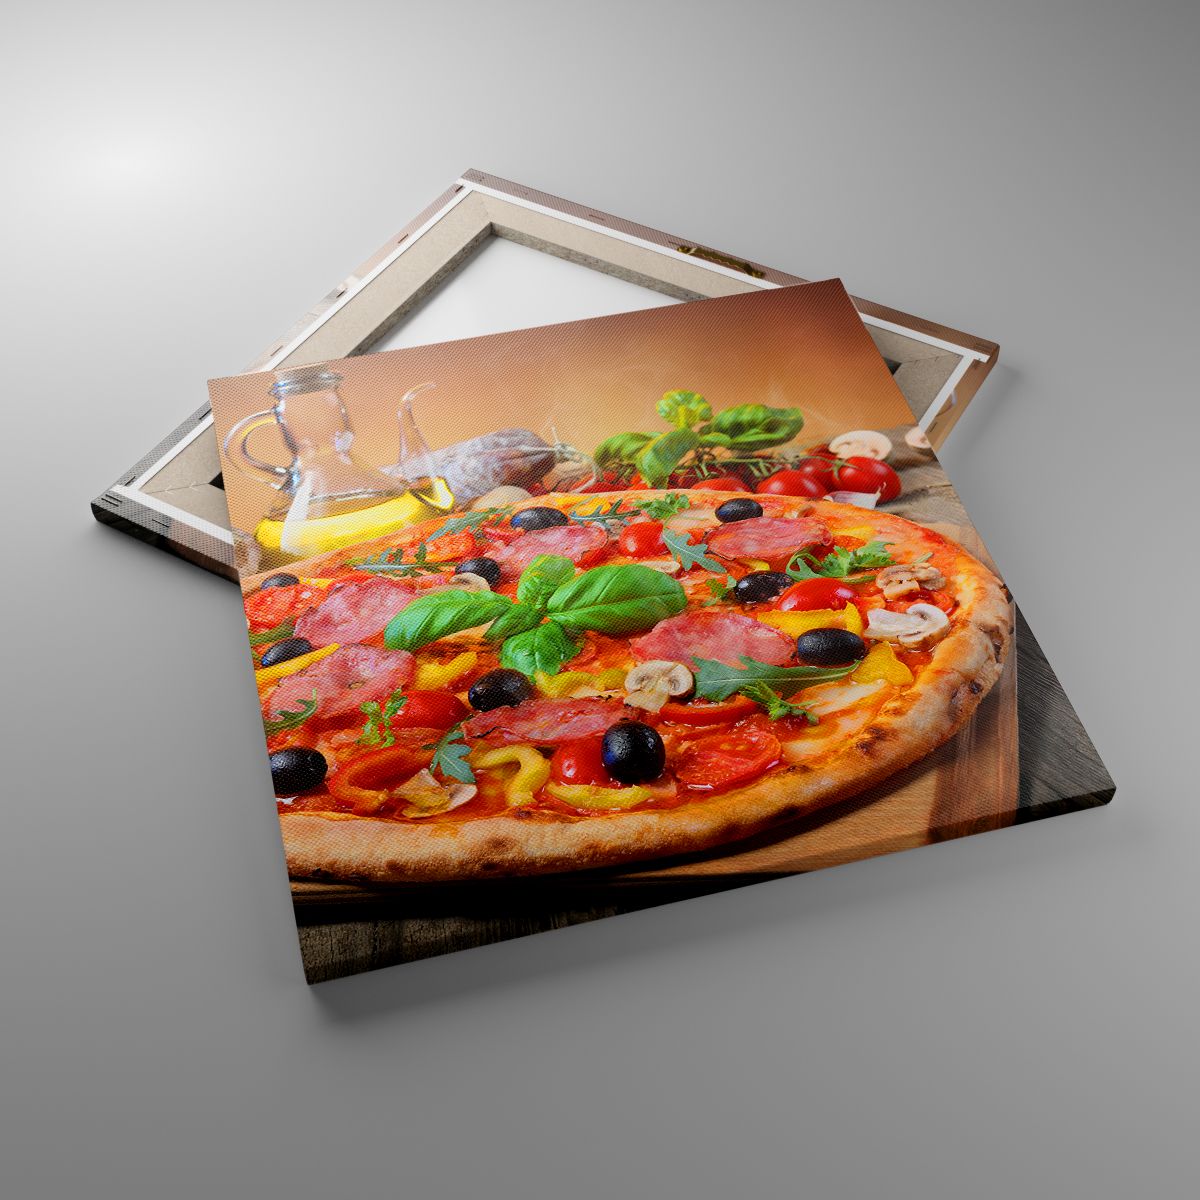 Leinwandbild Gastronomie, Leinwandbild Pizza, Leinwandbild Italien, Leinwandbild Küche, Leinwandbild Öl